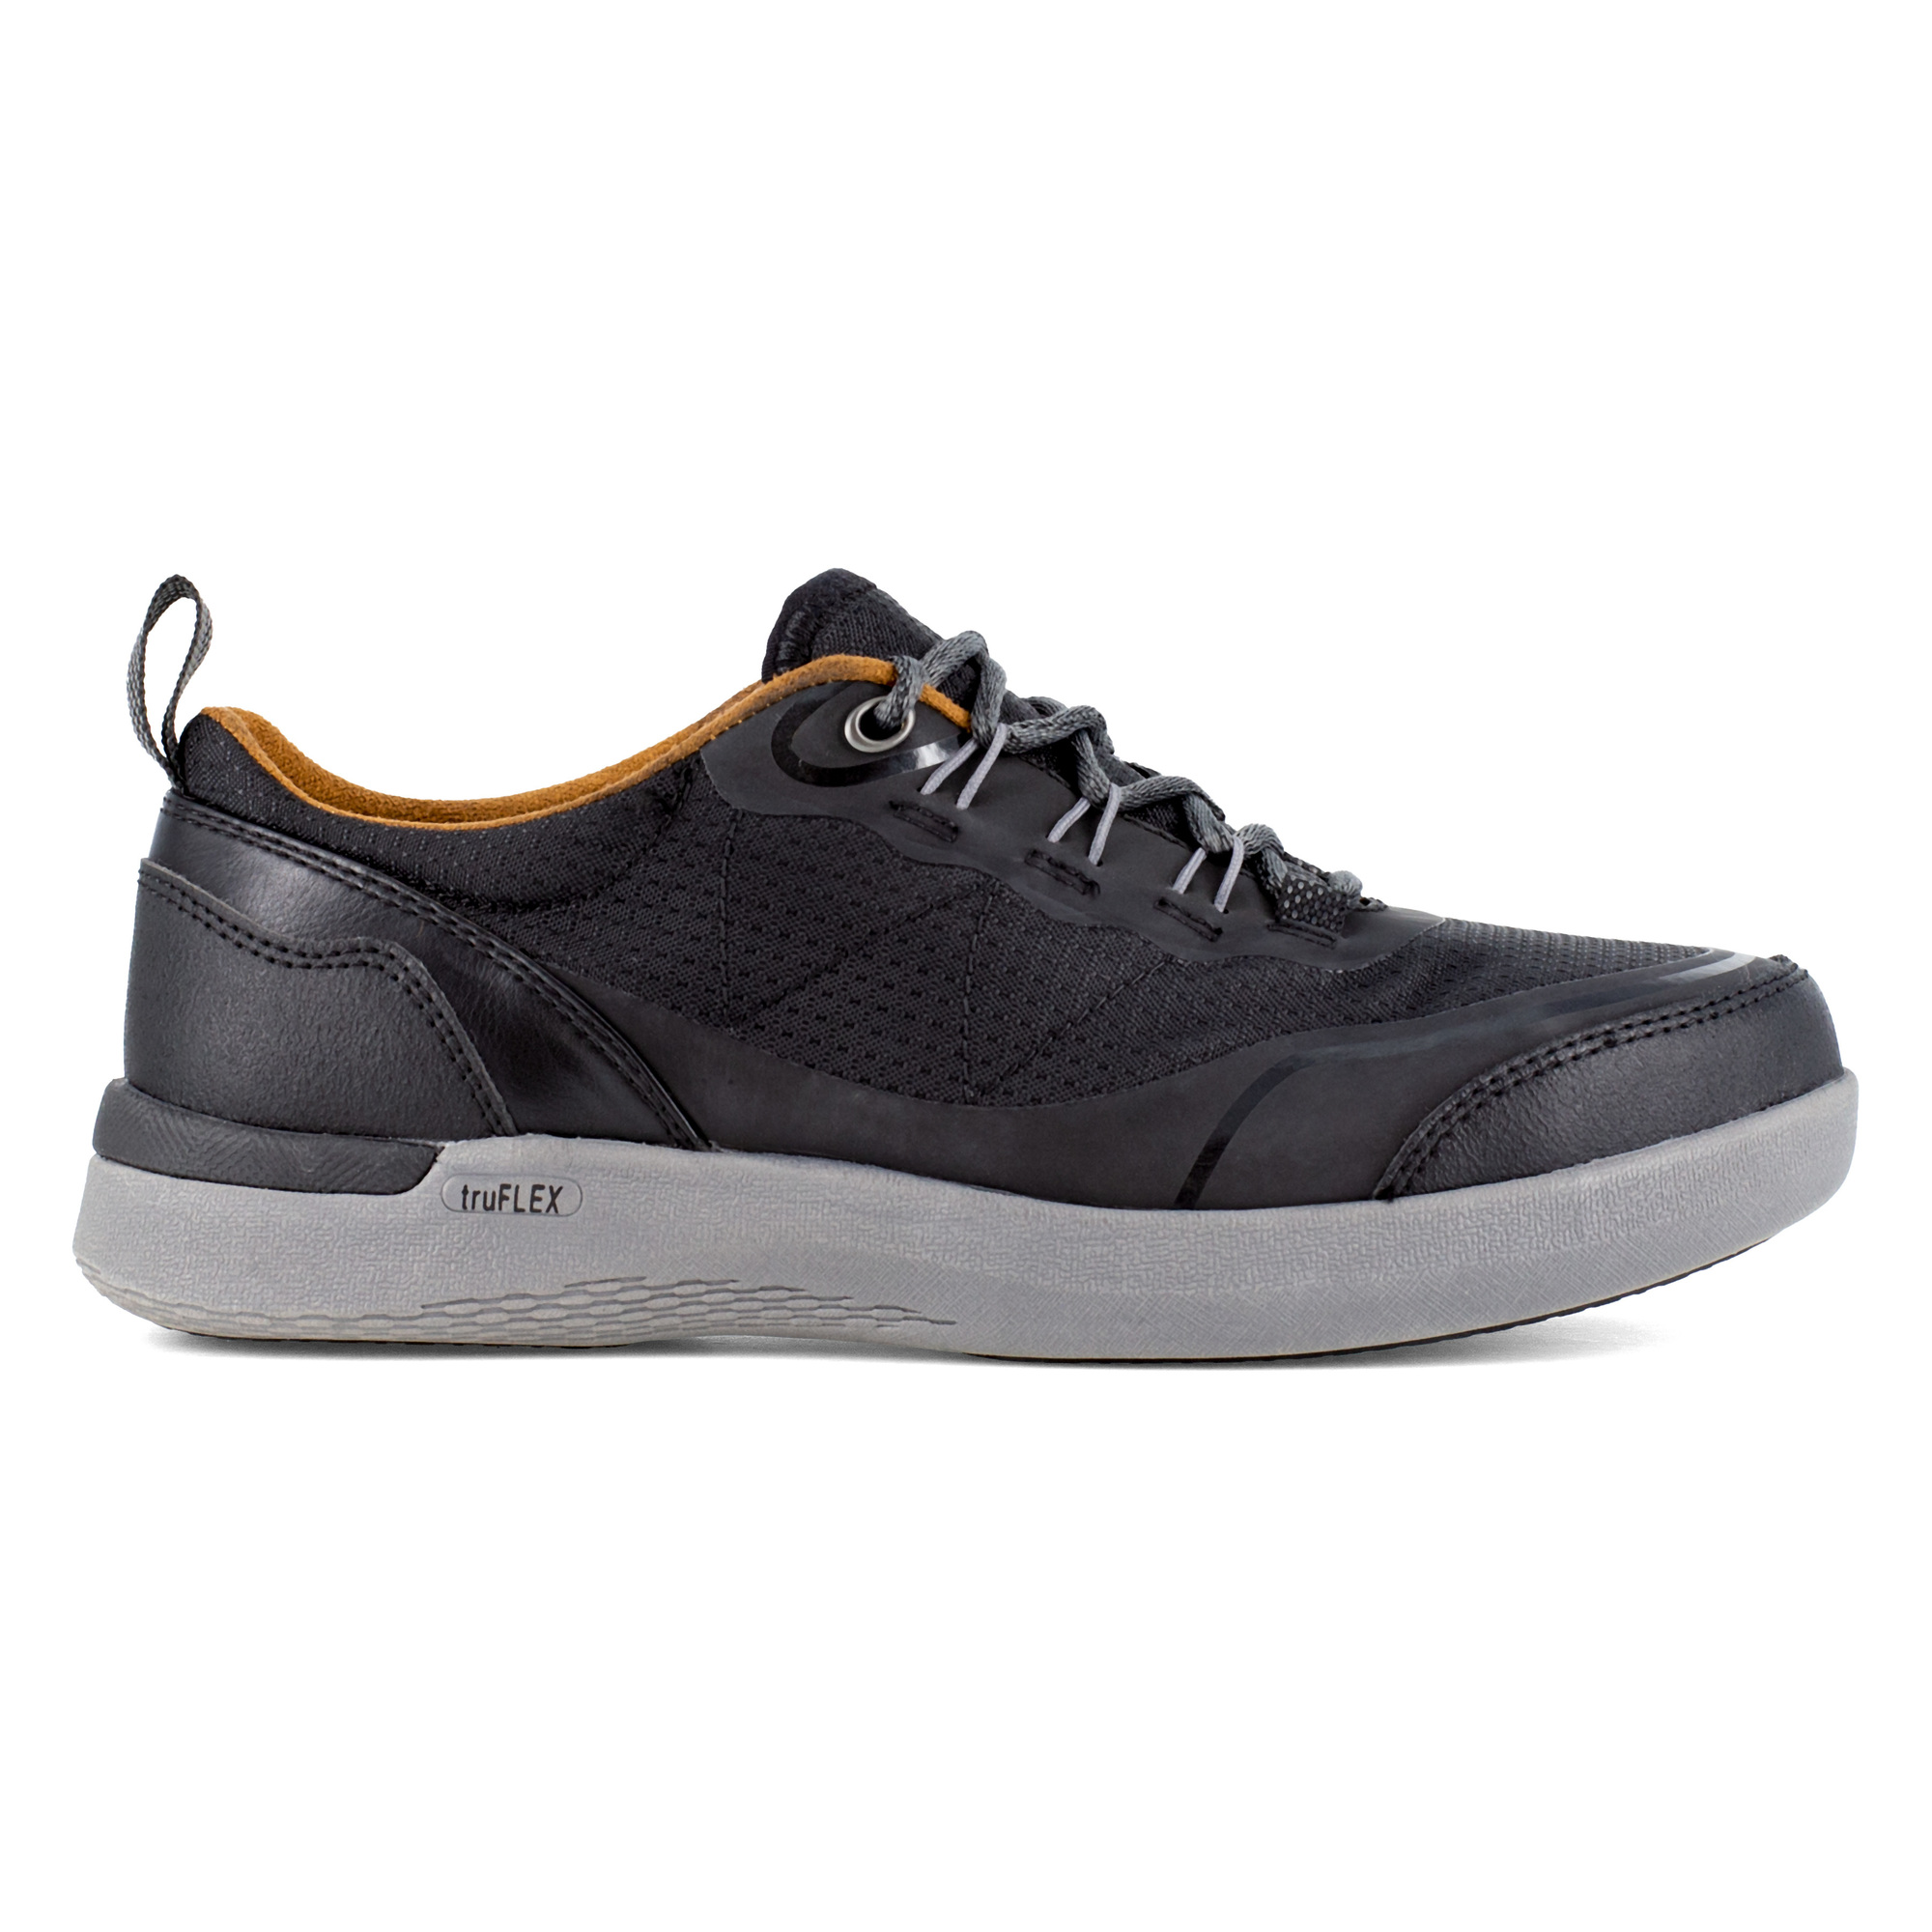 Rockport Works, Work Sneaker, Size 9 1/2, Width Wide, Color Black, Model RK687